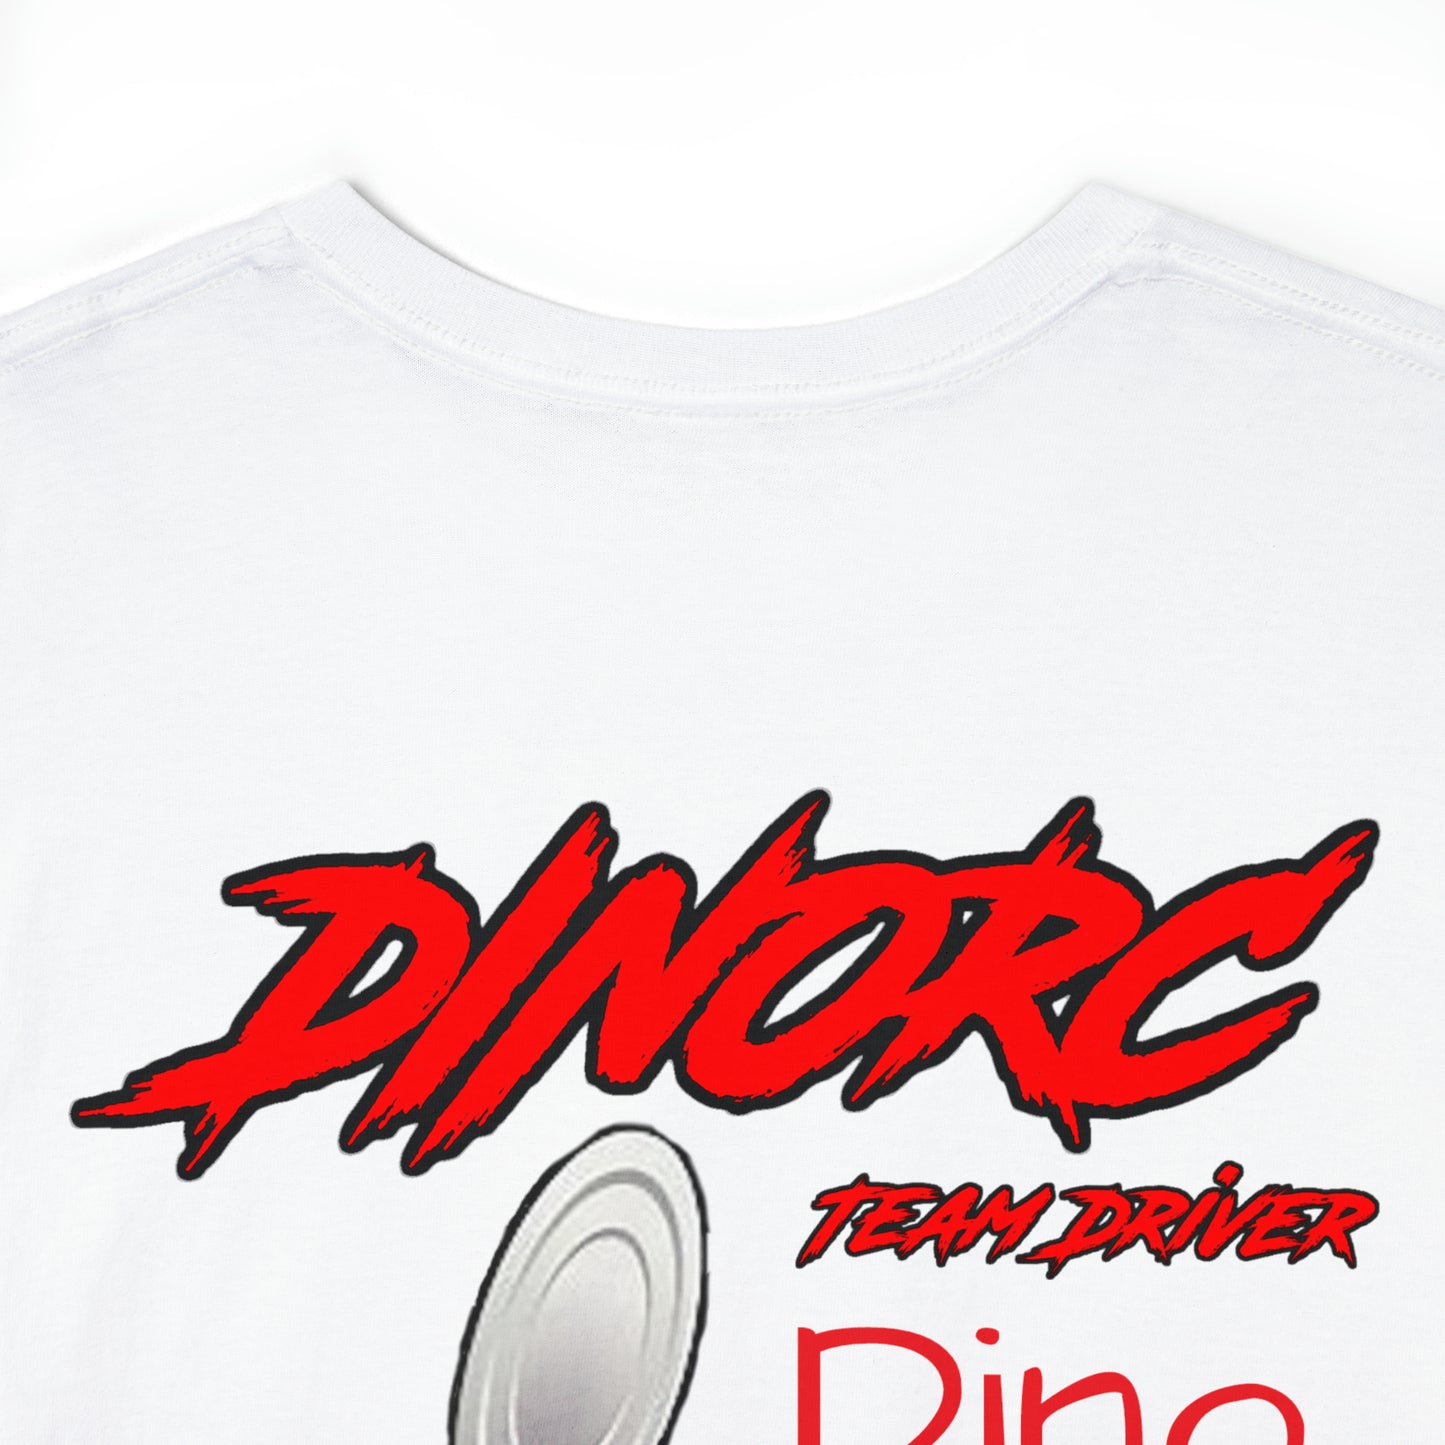 DINO's #18  Road Kill DinoRC  Logo T-Shirt S-5x